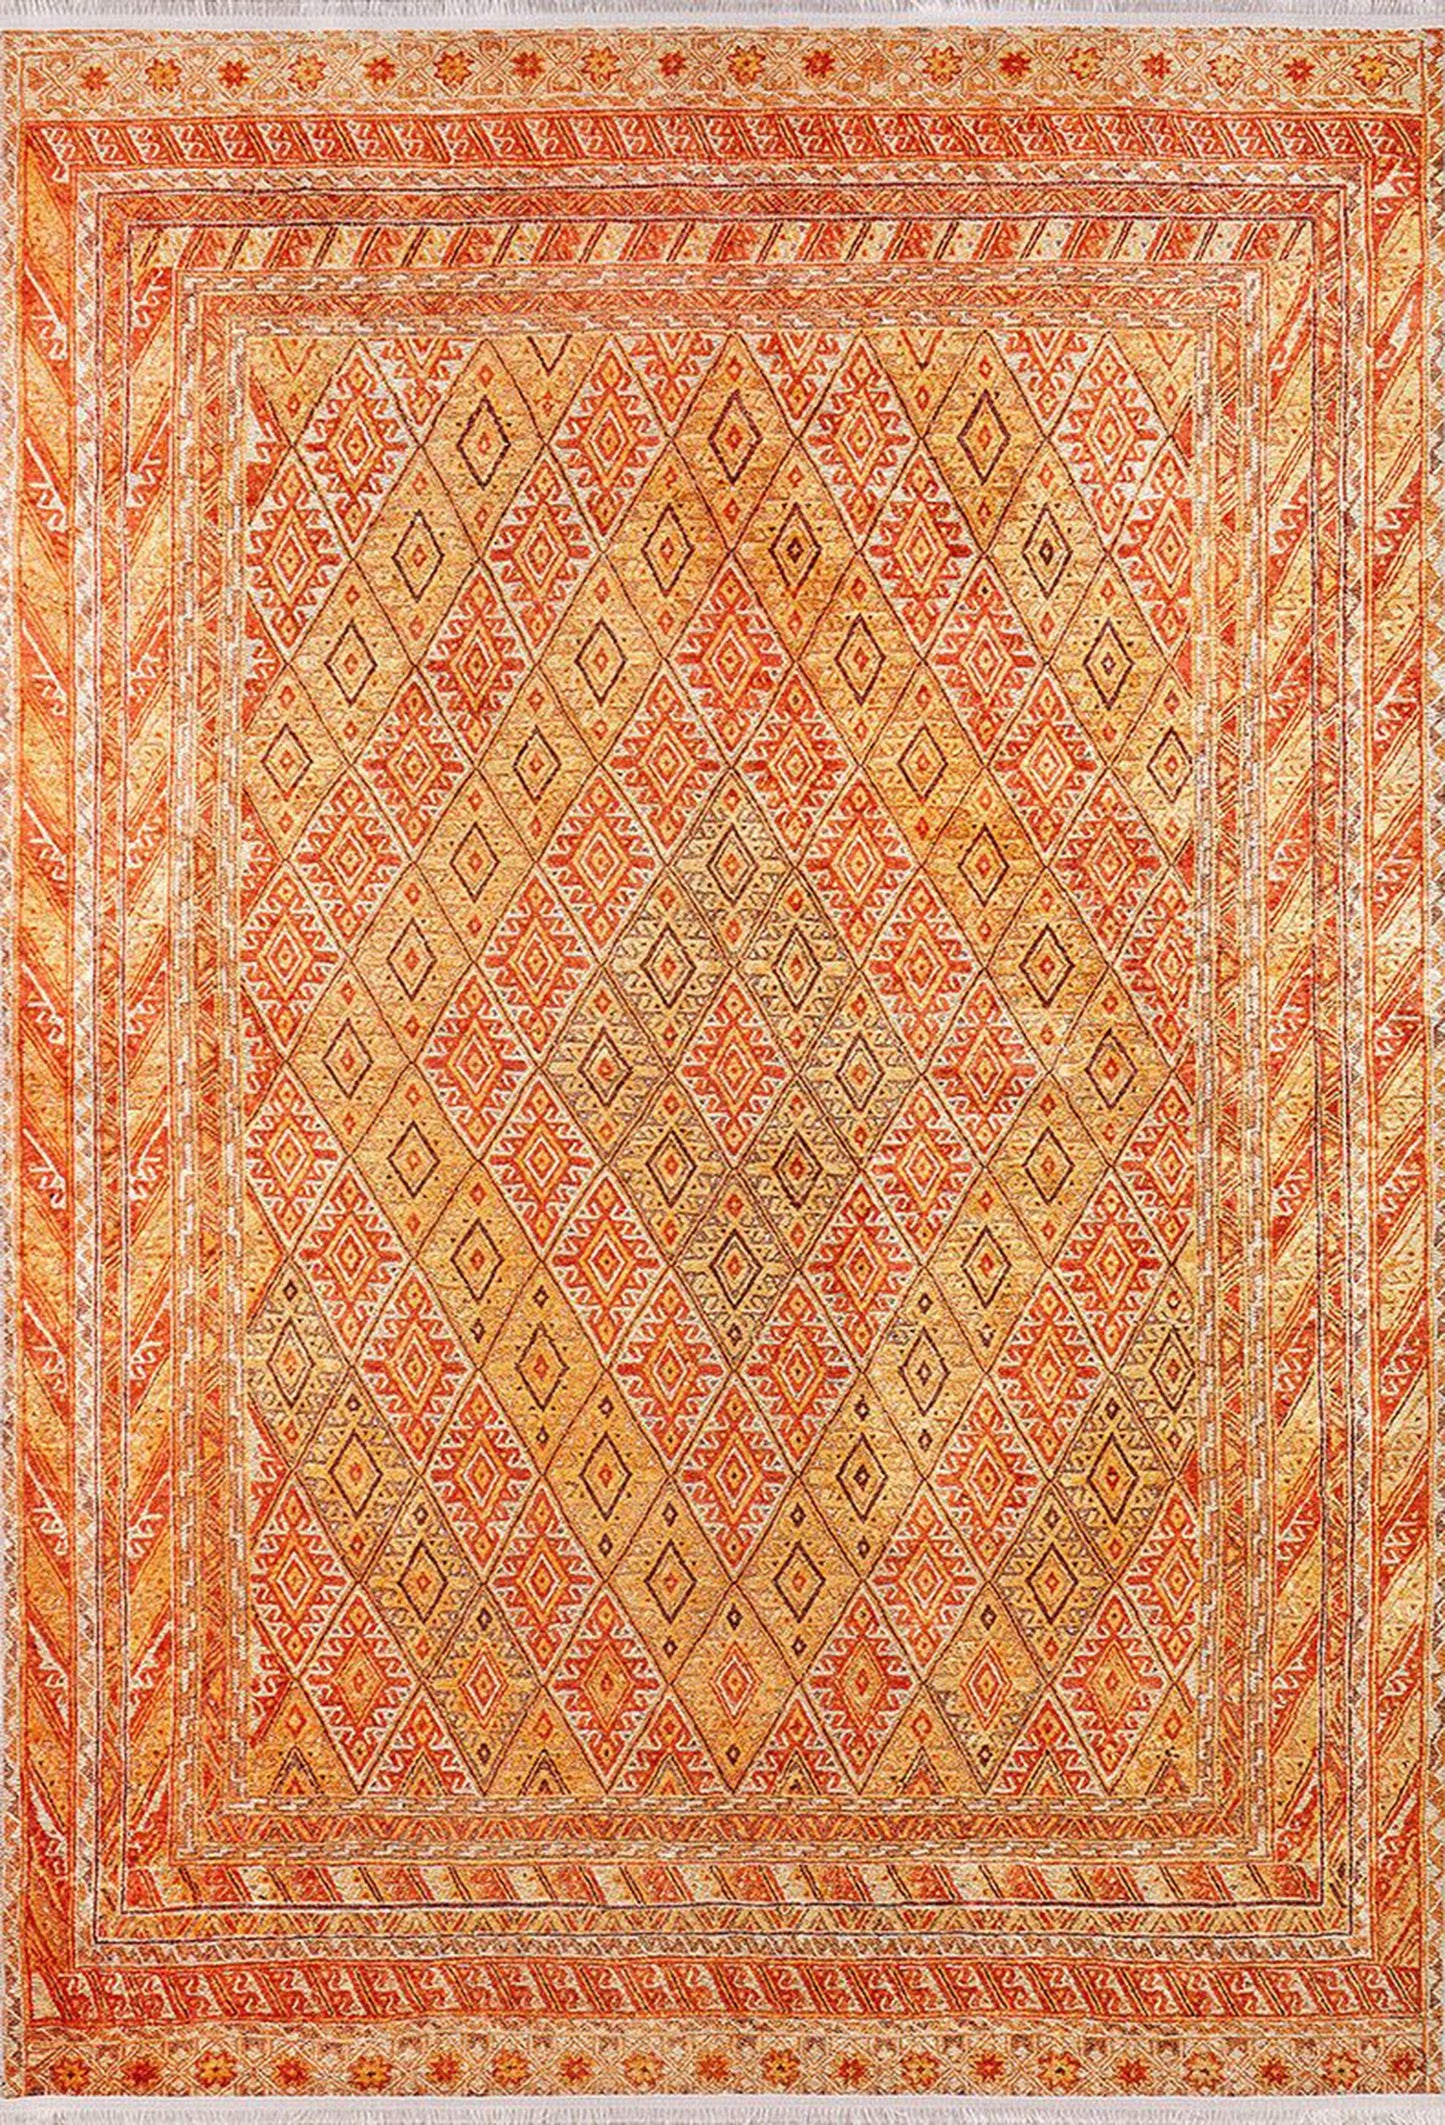 Türkischer Kelim-Teppich von Orish in Orange und Gelb